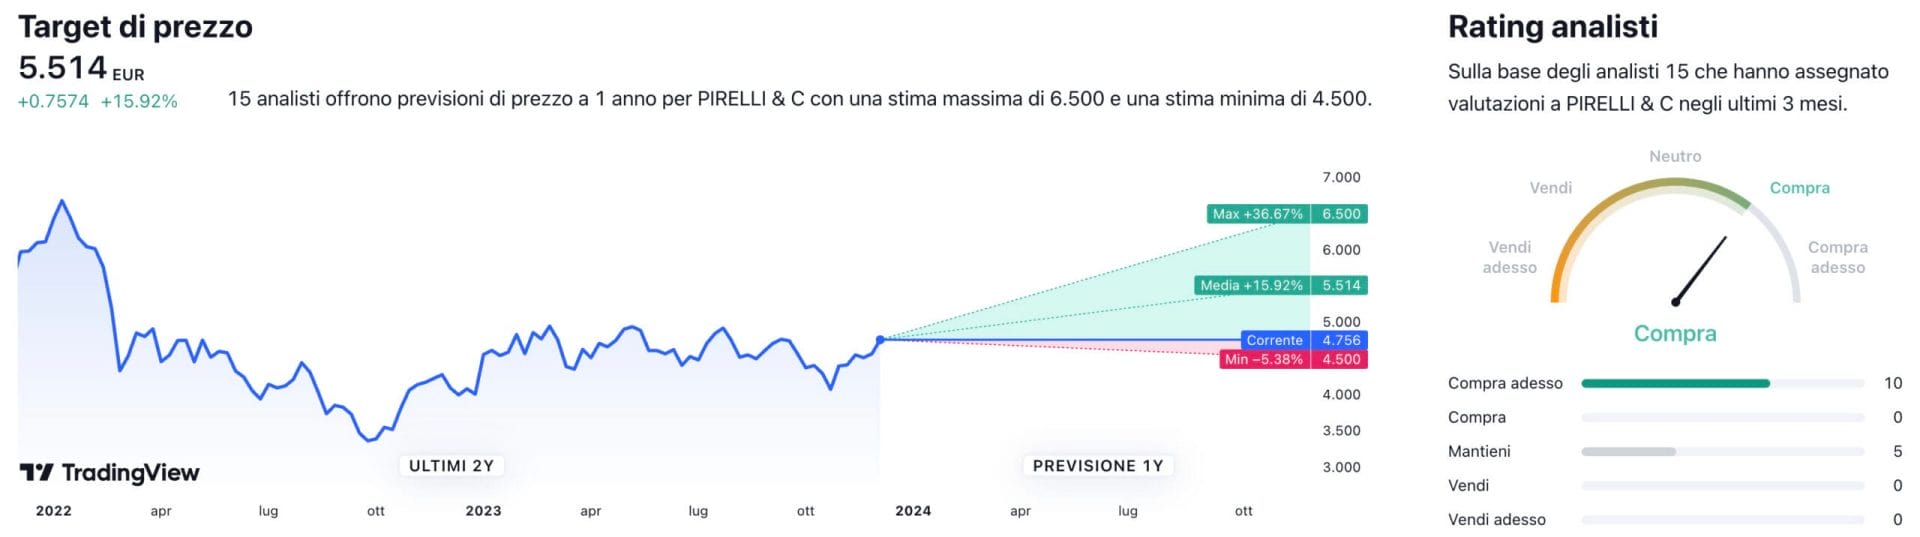 Target di prezzo a un anno e raccomandazioni degli analisti per il titolo Pirelli